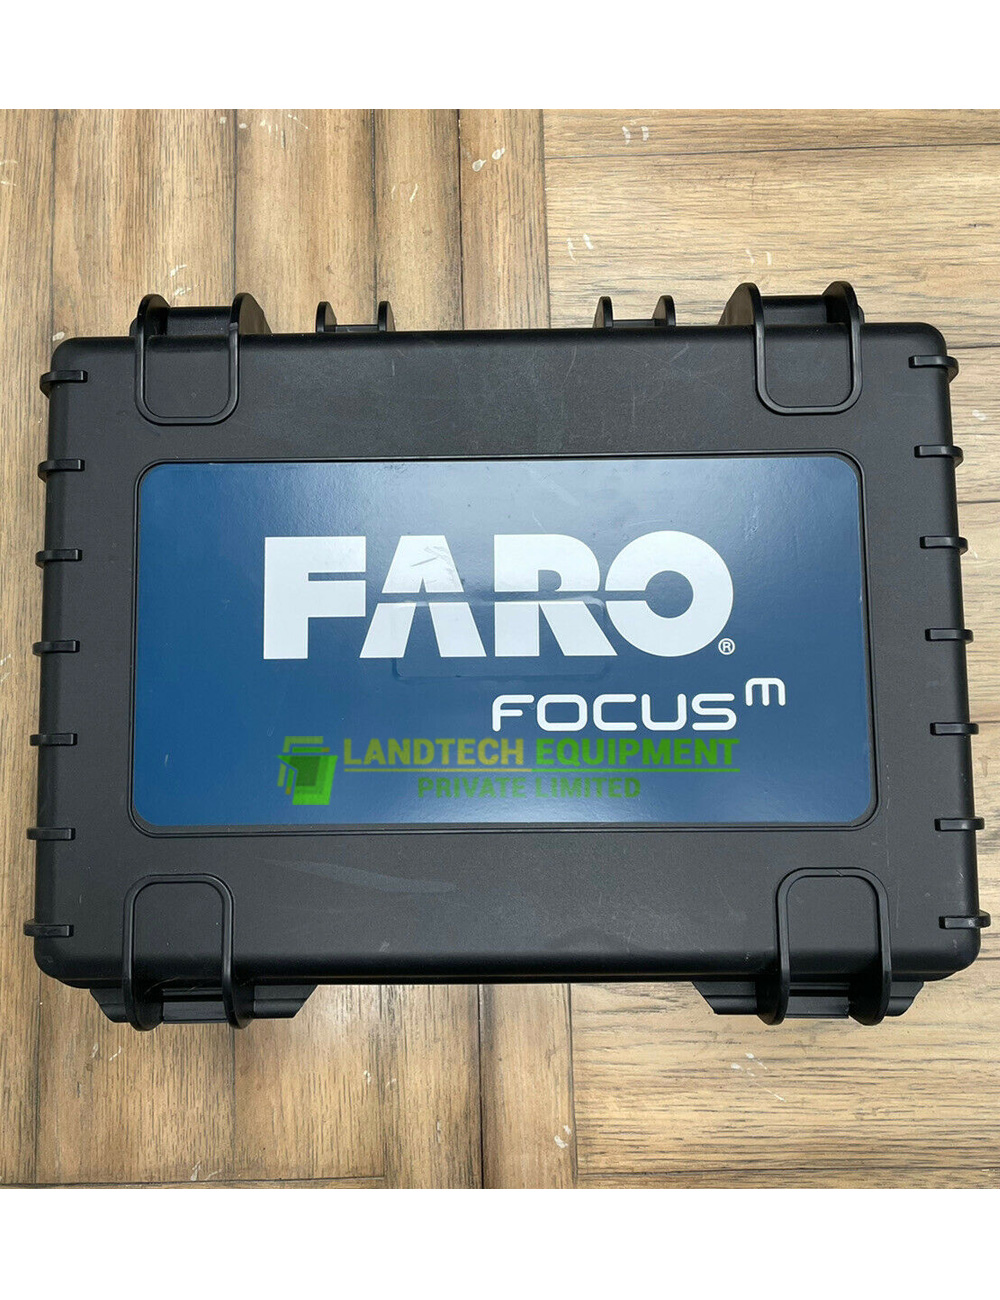 Buy-used-FARO-Focus-M70.jpg